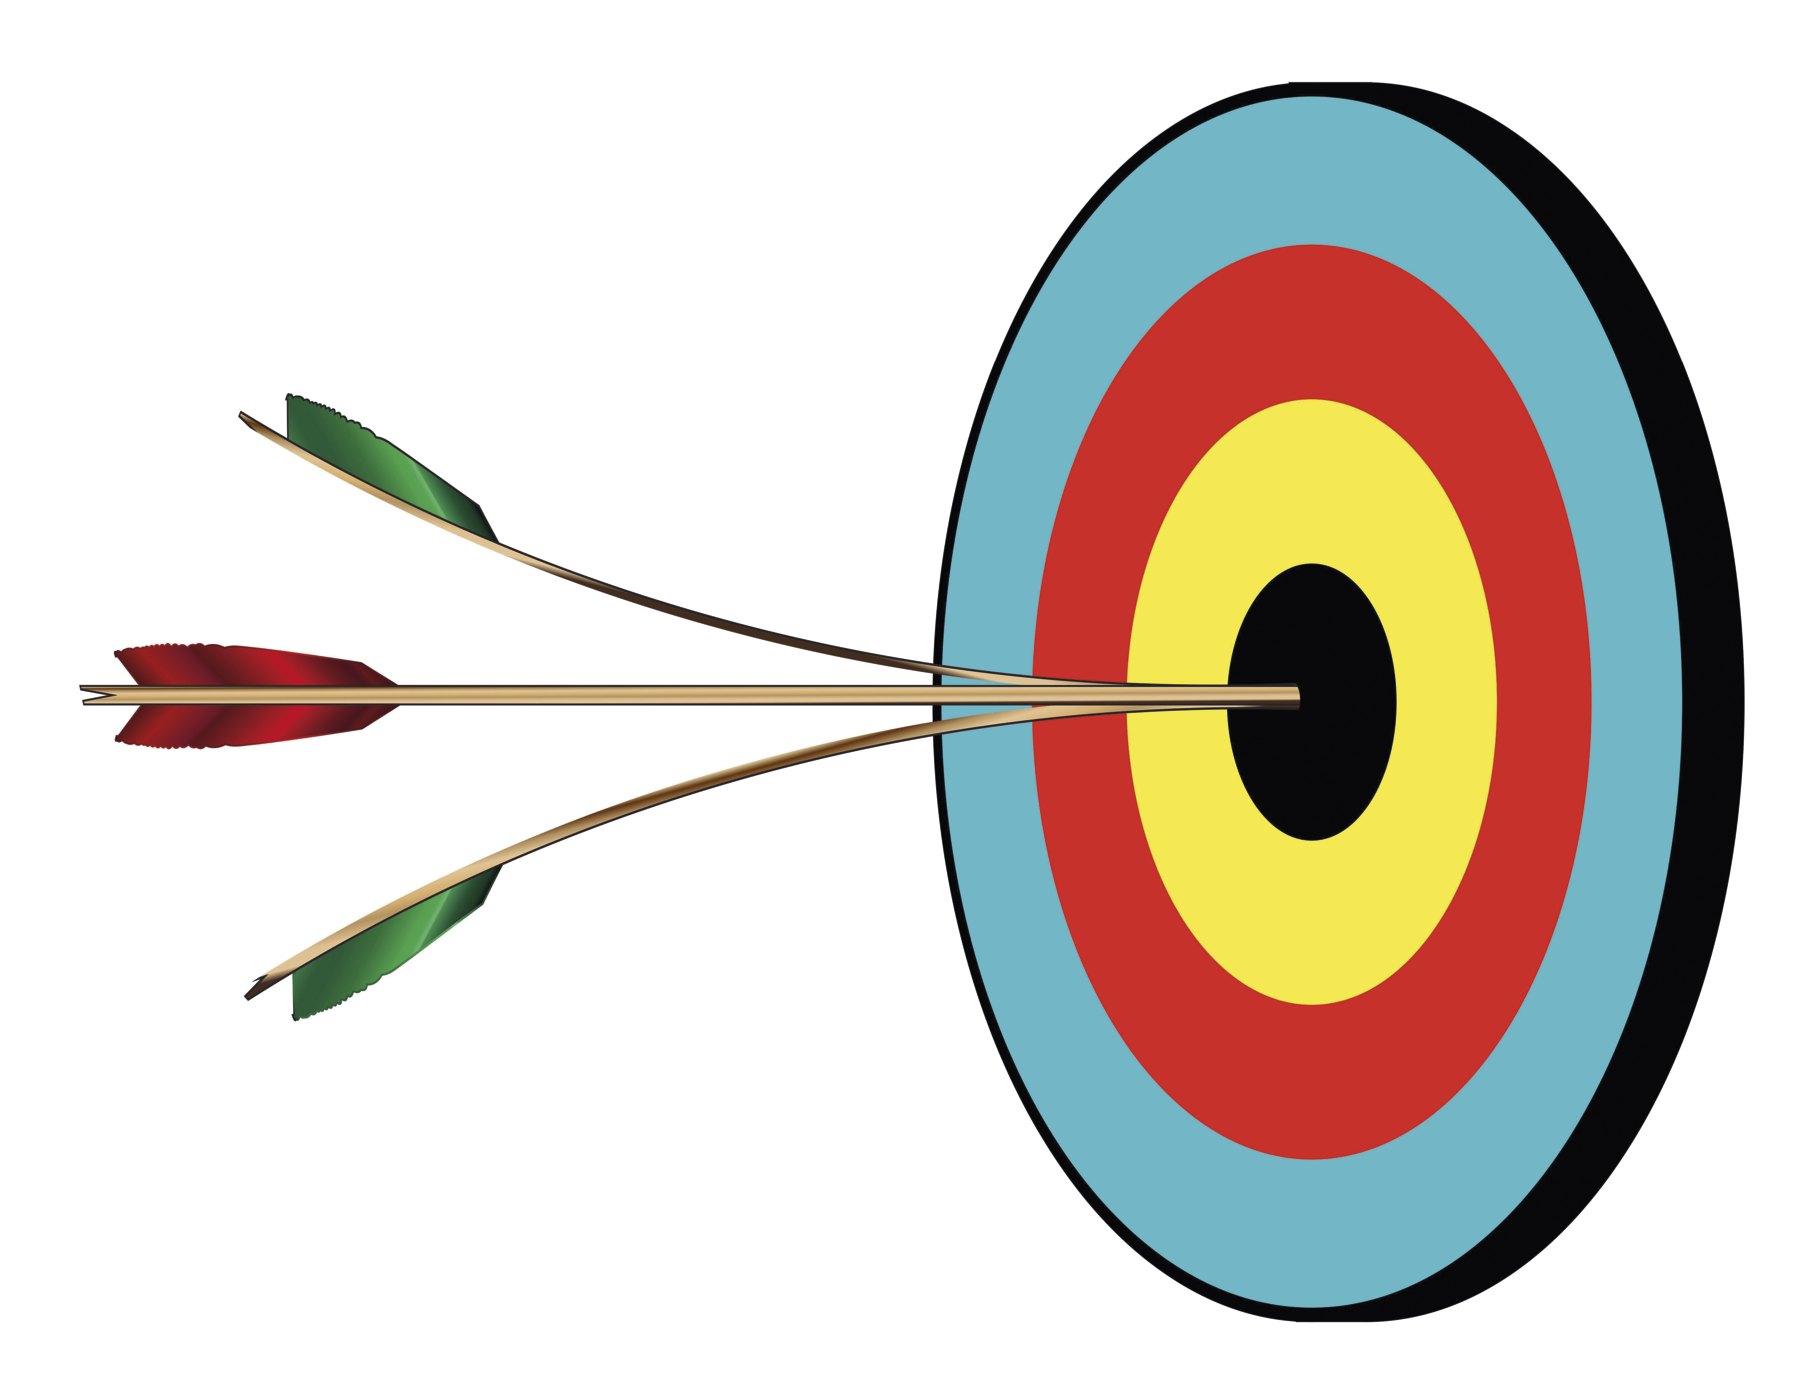 Ilustração. Painel circular com diversos círculos dentro, com cores variadas. De fora para dentro: verde, vermelho, amarelo e preto. No círculo central há duas flechas verdes e entre elas, uma flecha vermelha.